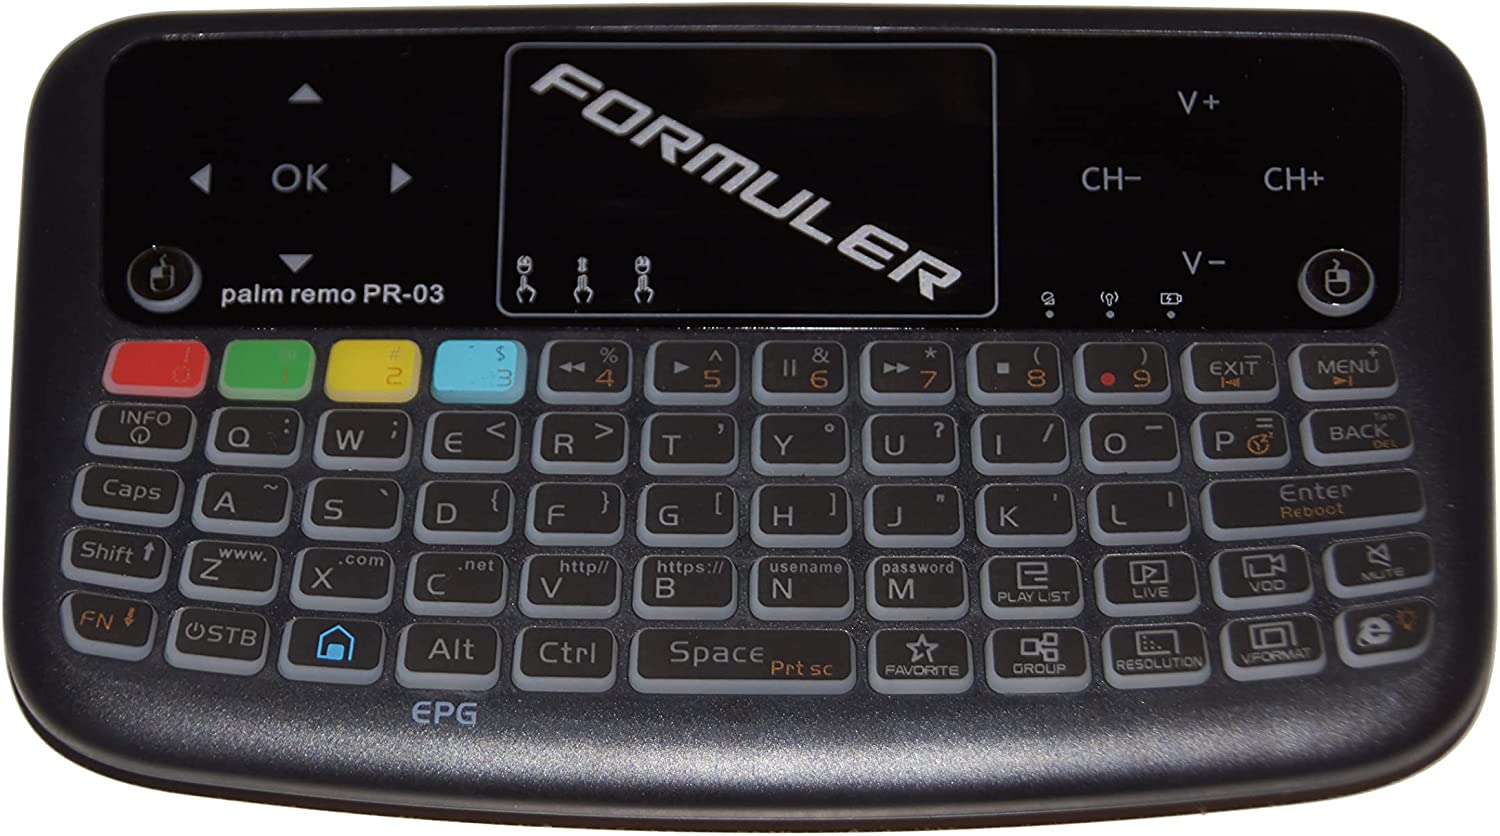 Formuler Z10 + ACCESORIOS GRATIS: 1 x Mini teclado inalámbrico con panel táctil + 1 x Cable USB retráctil